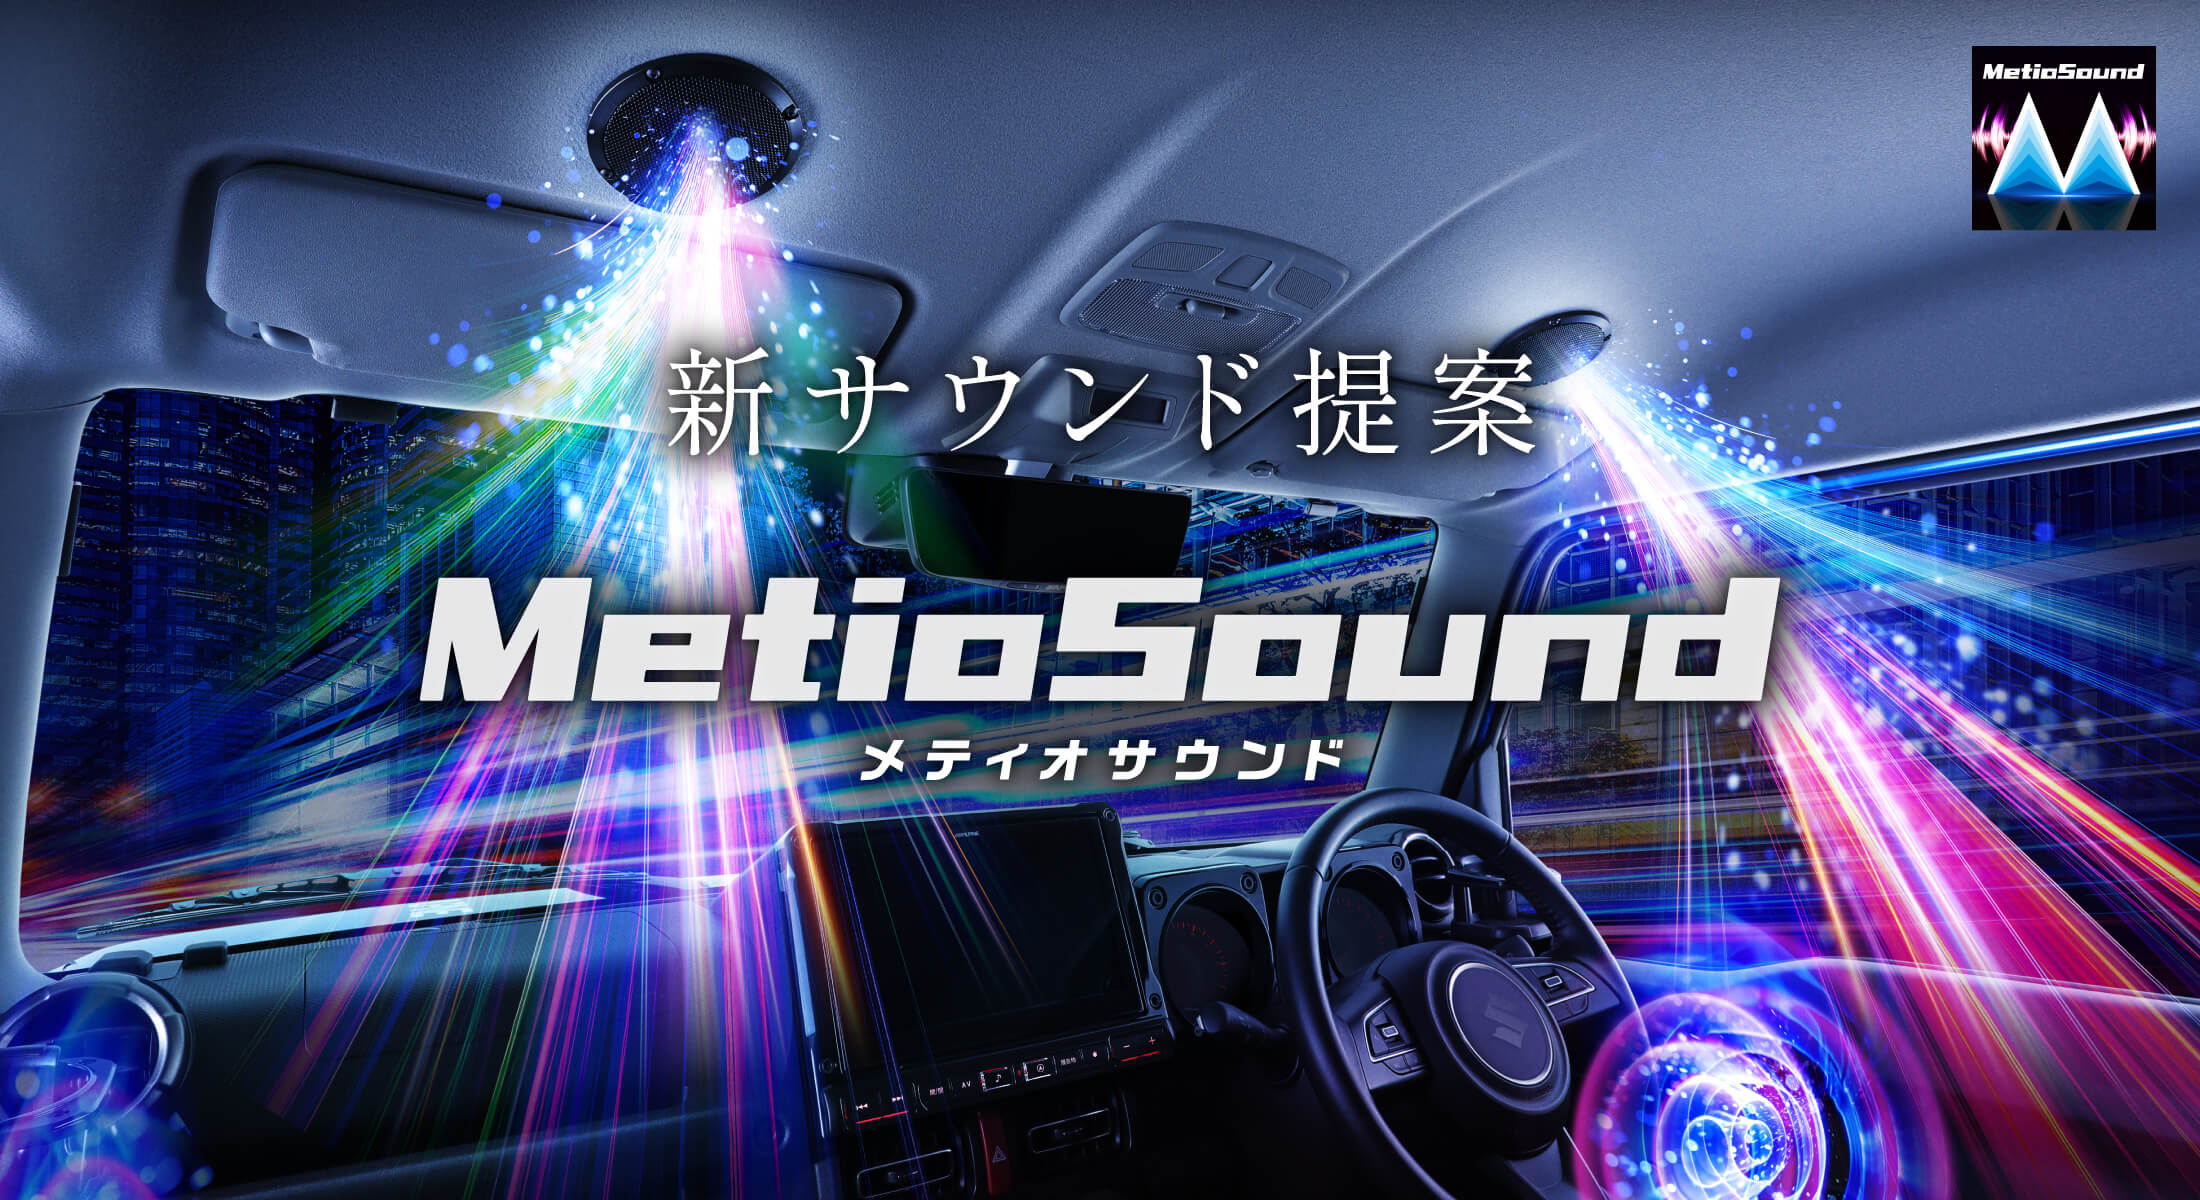 新サウンド提案 MetioSound メティオサウンド